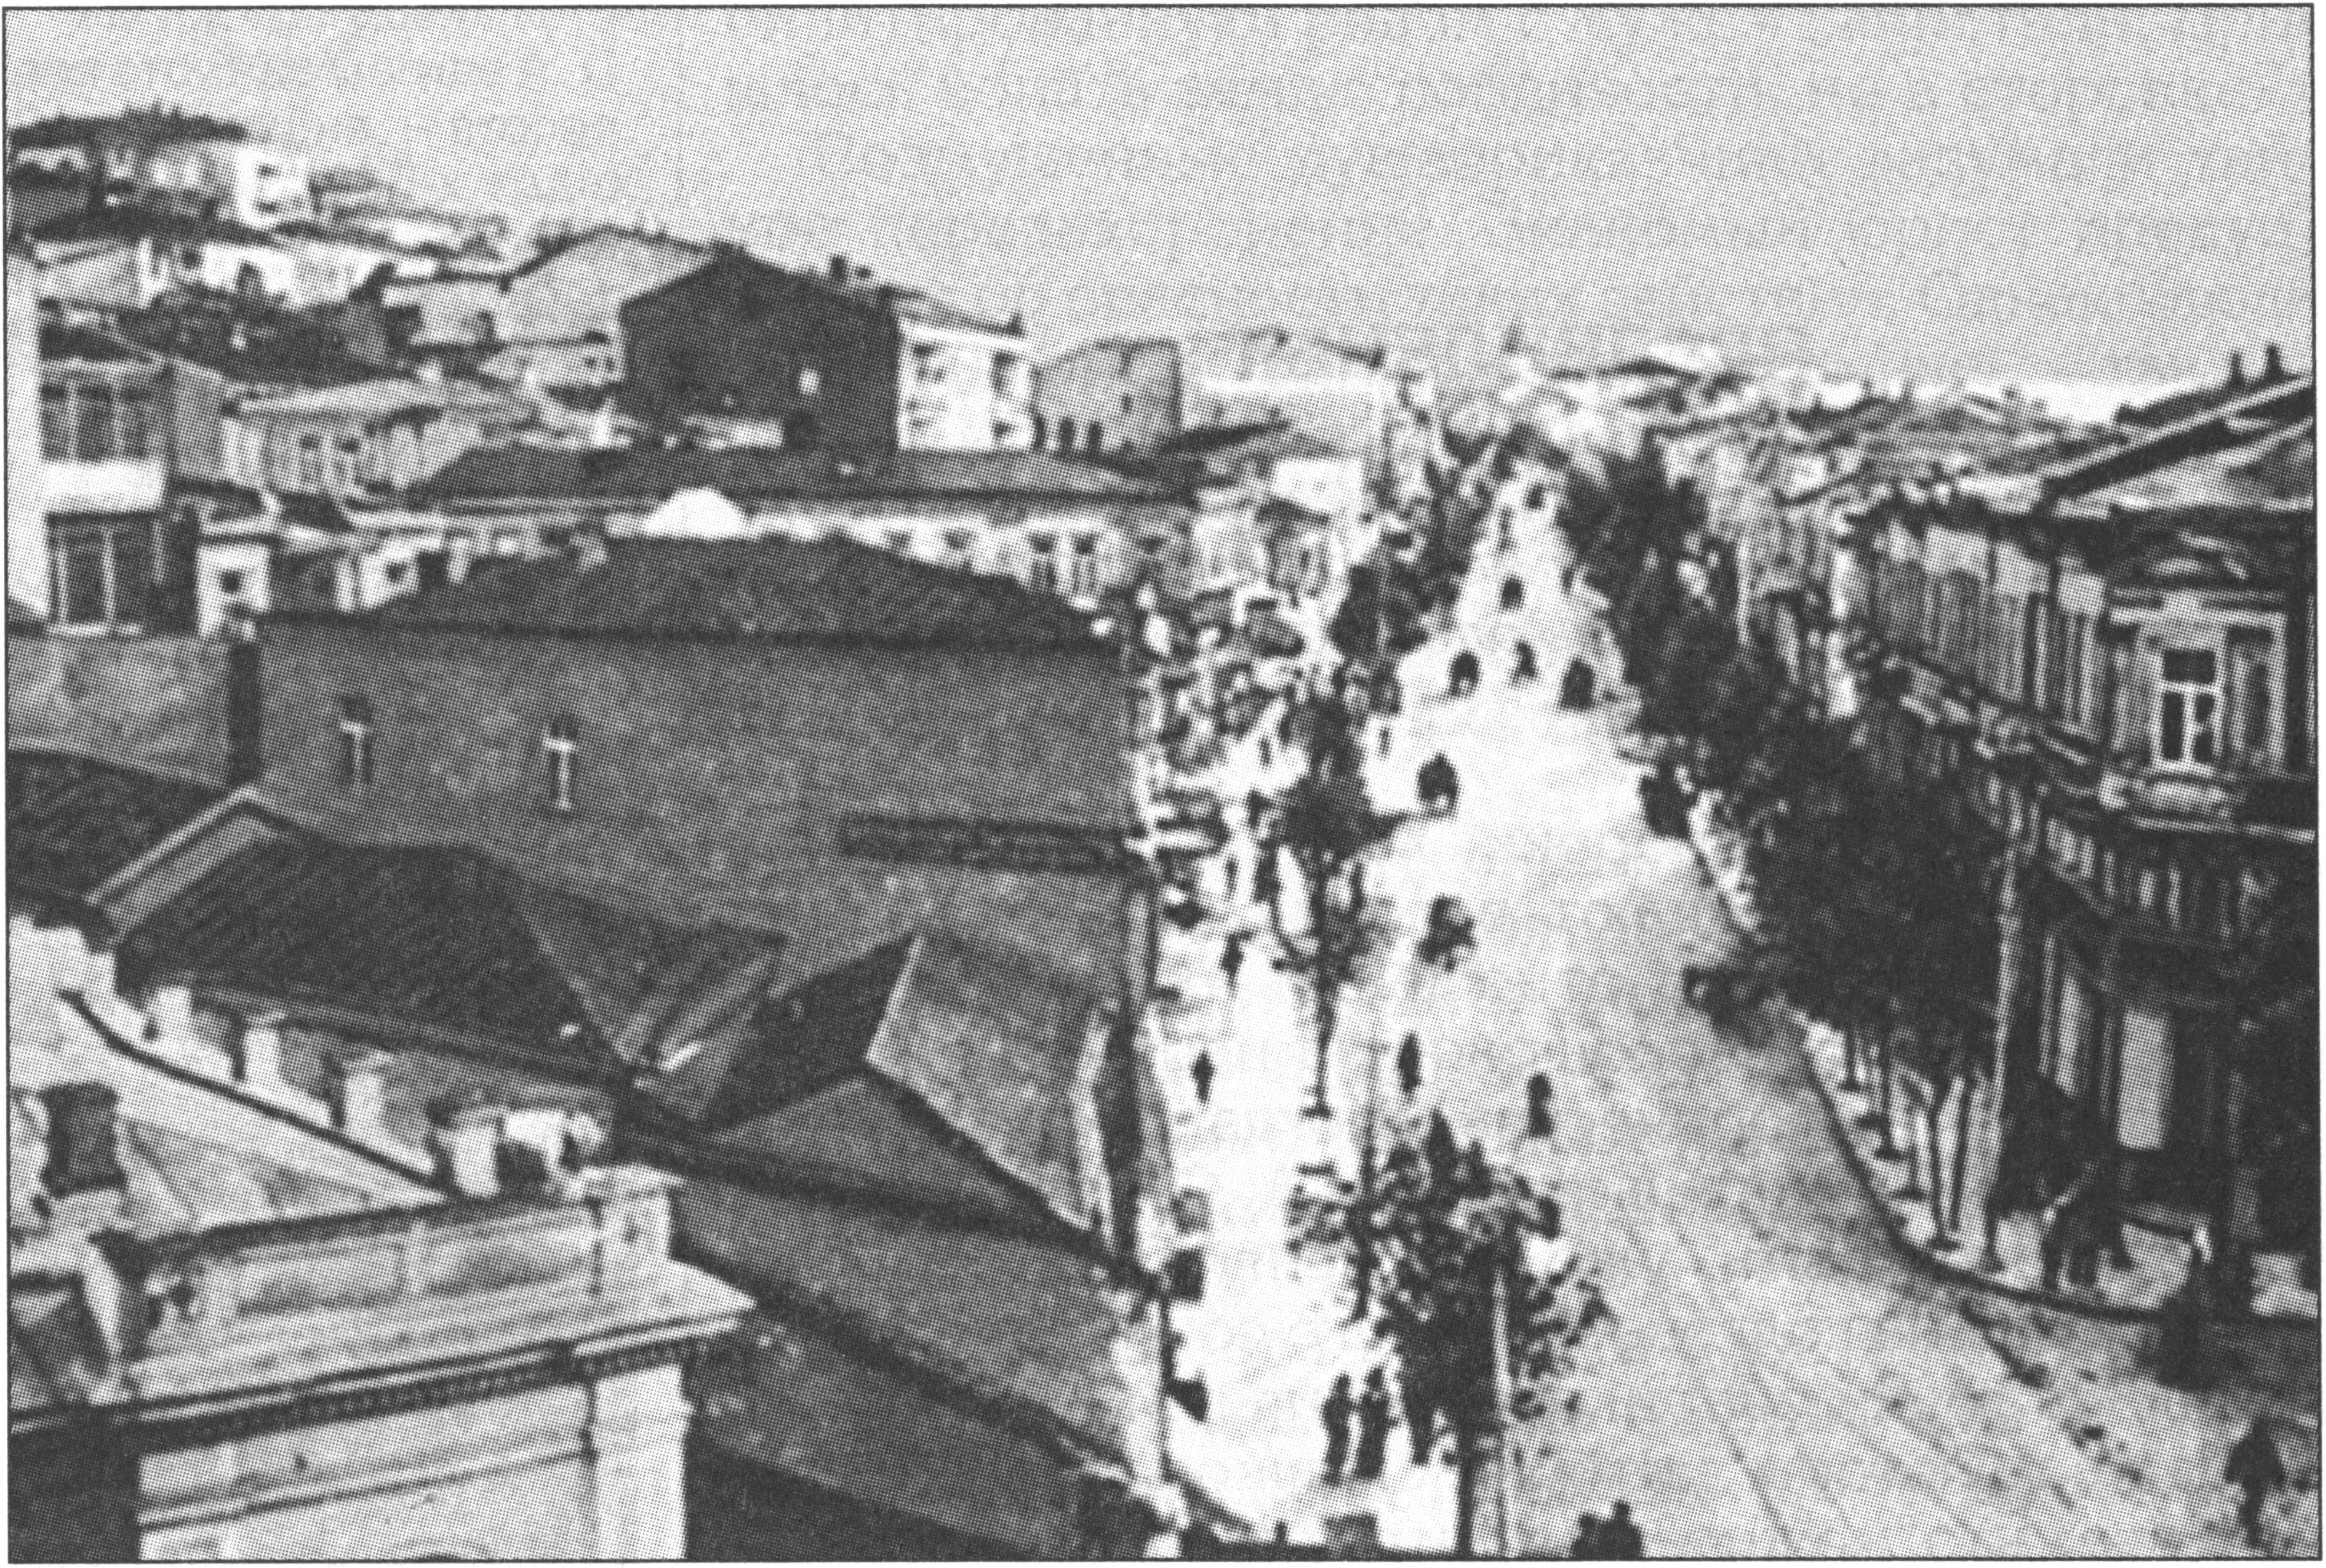 Севастополь начала XX века, гриновский Зурбаган